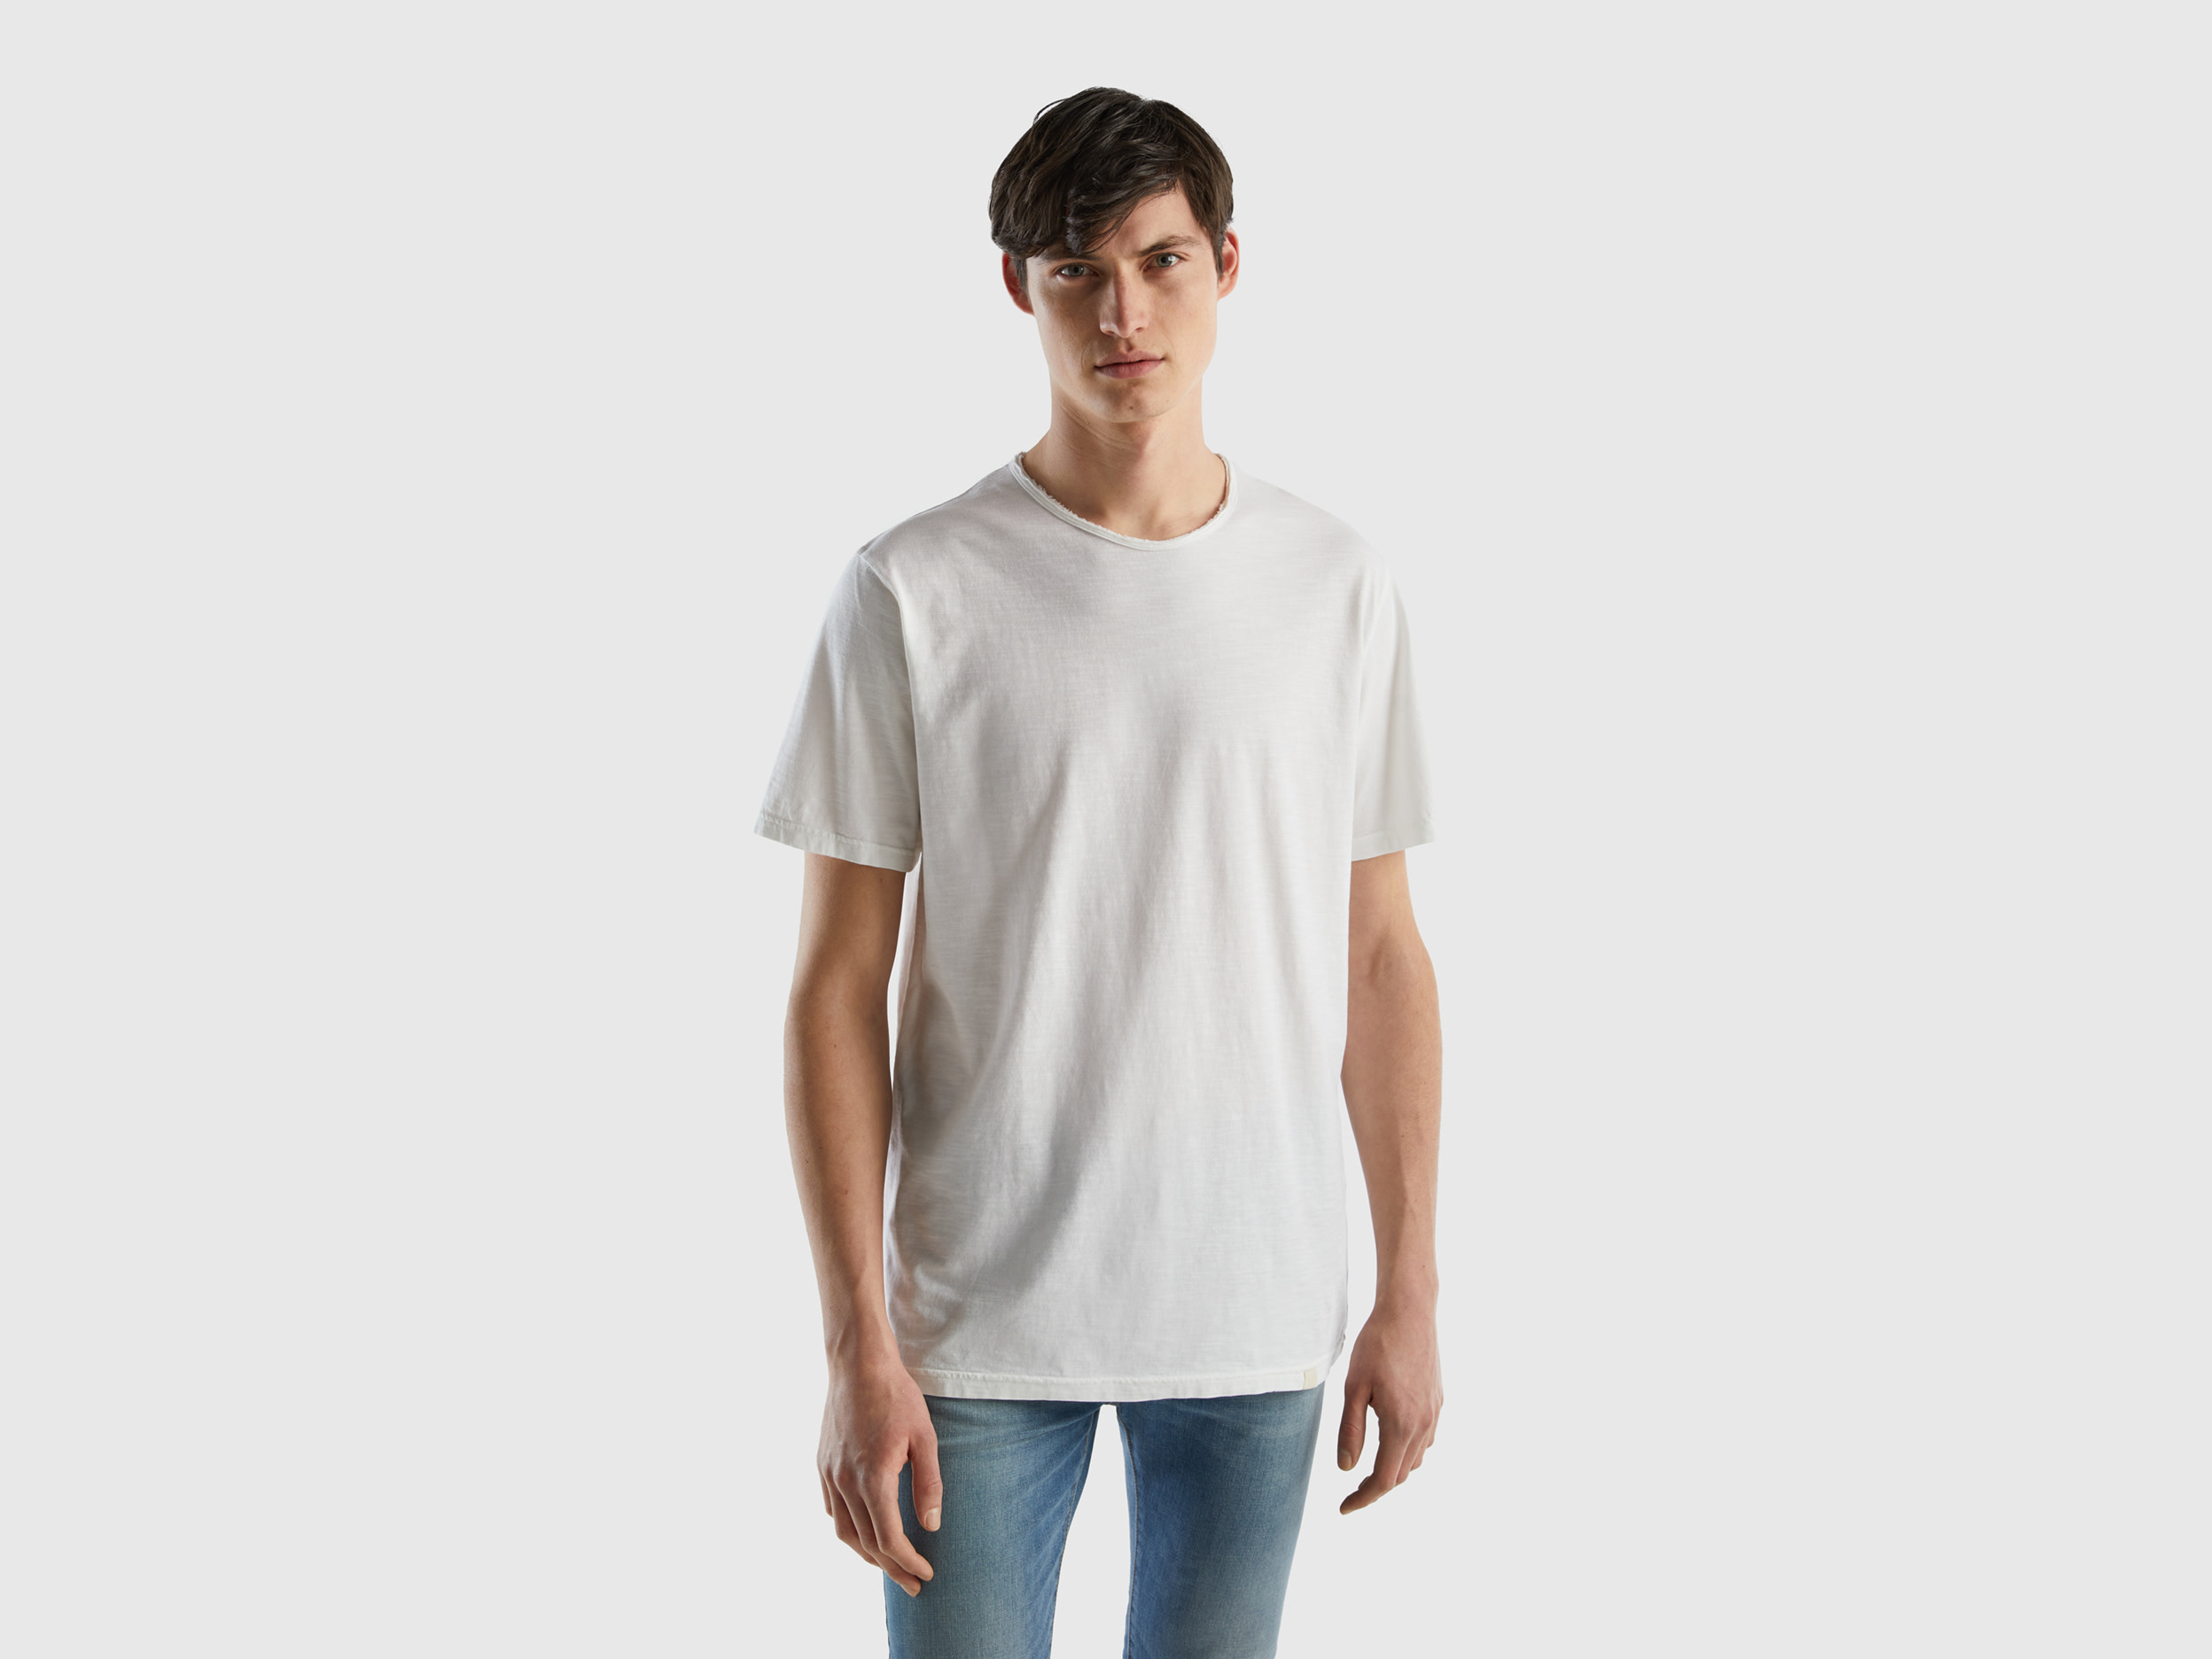 Benetton, White T-shirt In Slub Cotton, size M, White, Men